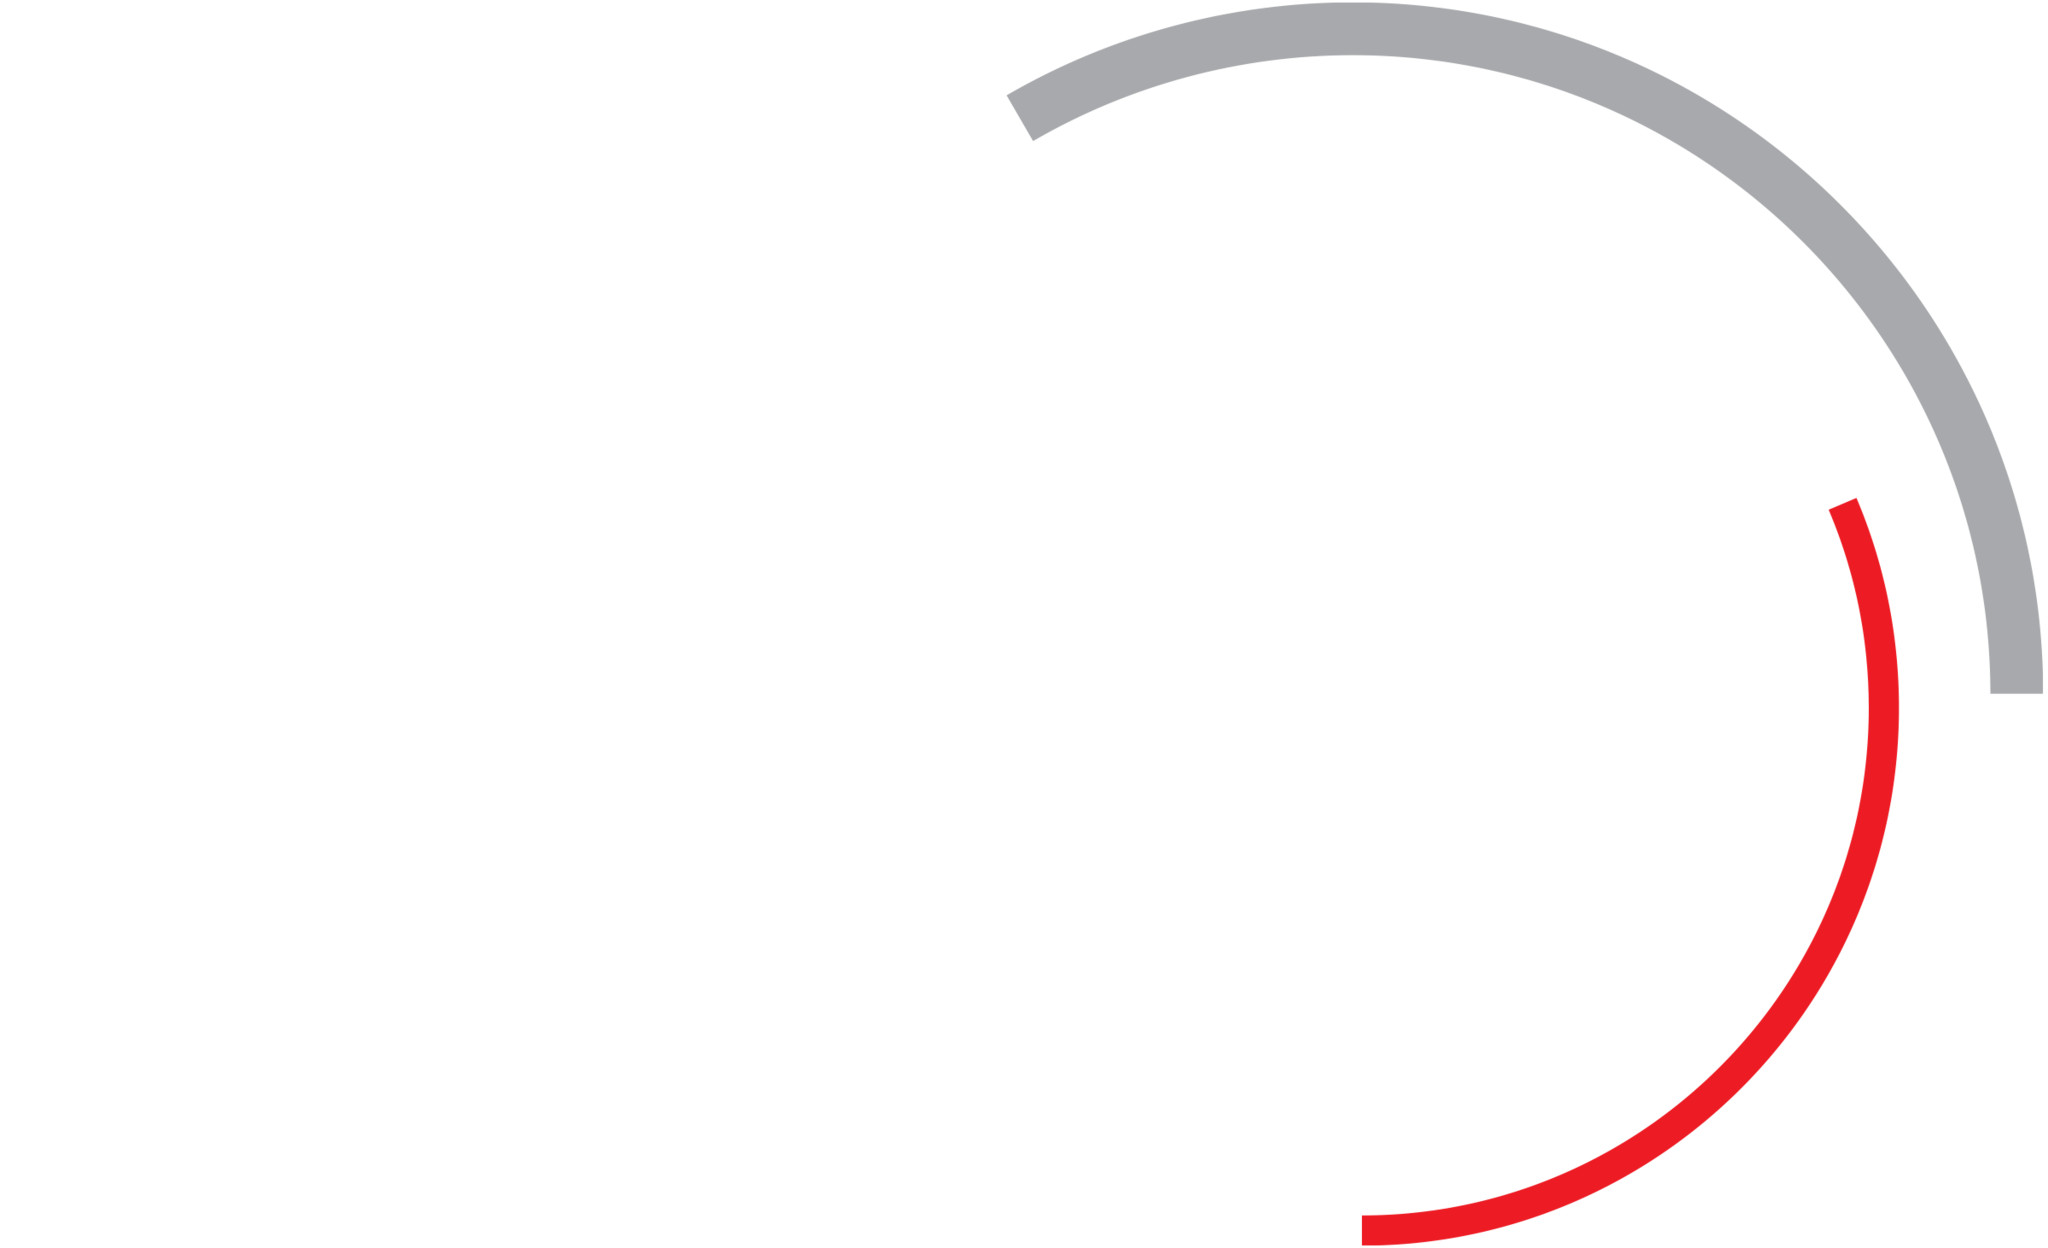 Yamaha Elite